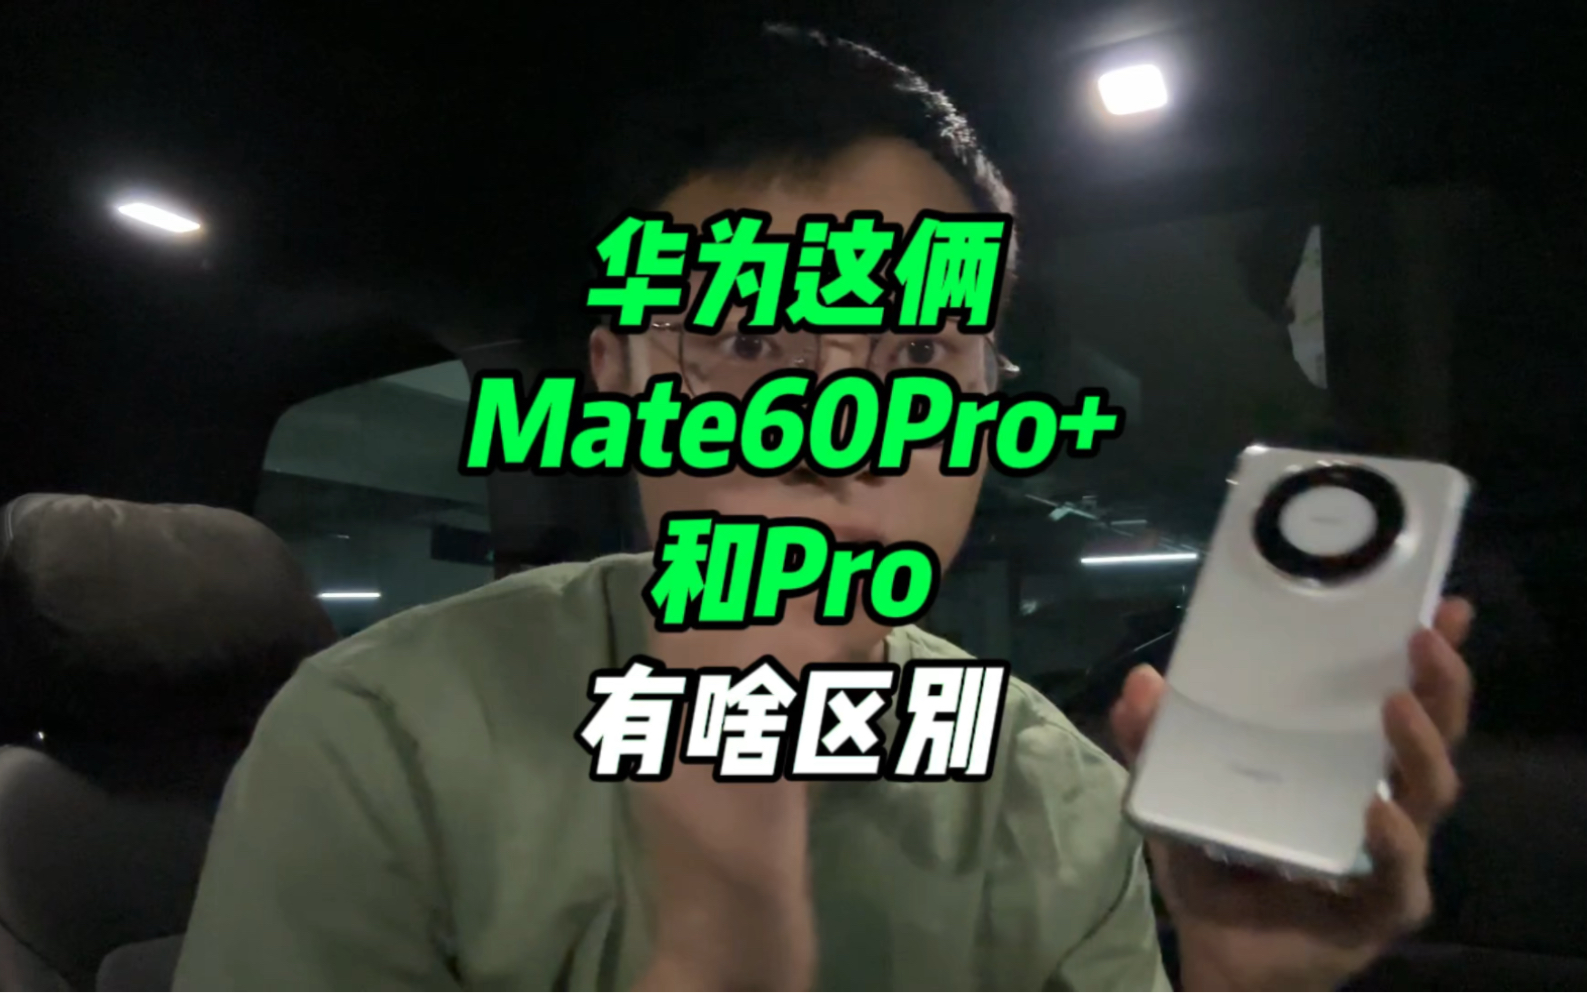 基本确认华为Mate60Pro+和Pro的区别了